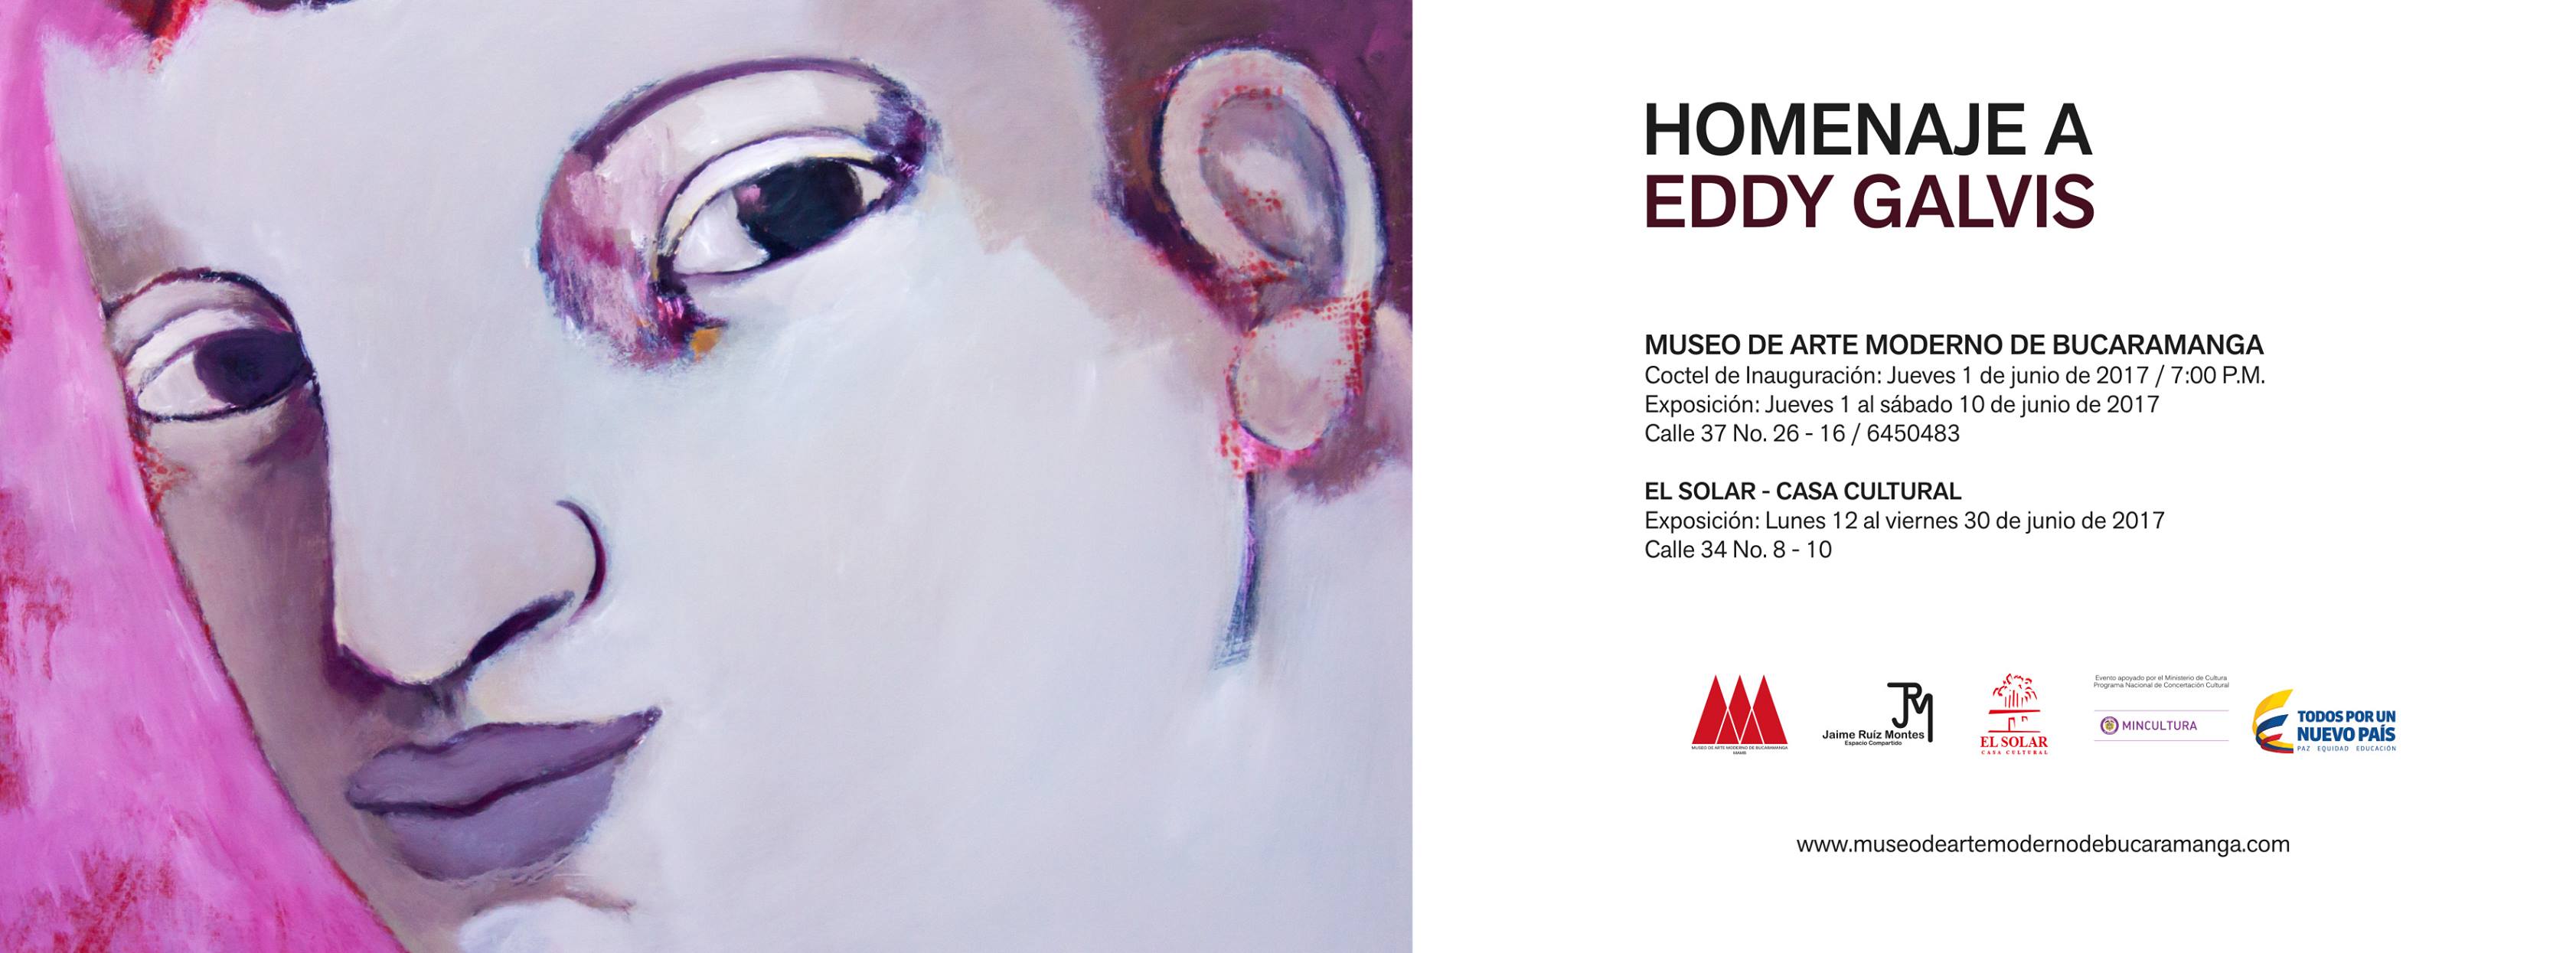 Homenaje a Eddy Galvis en el Museo de Arte Moderno de Bucaramanga y El Solar - Casa Cultural